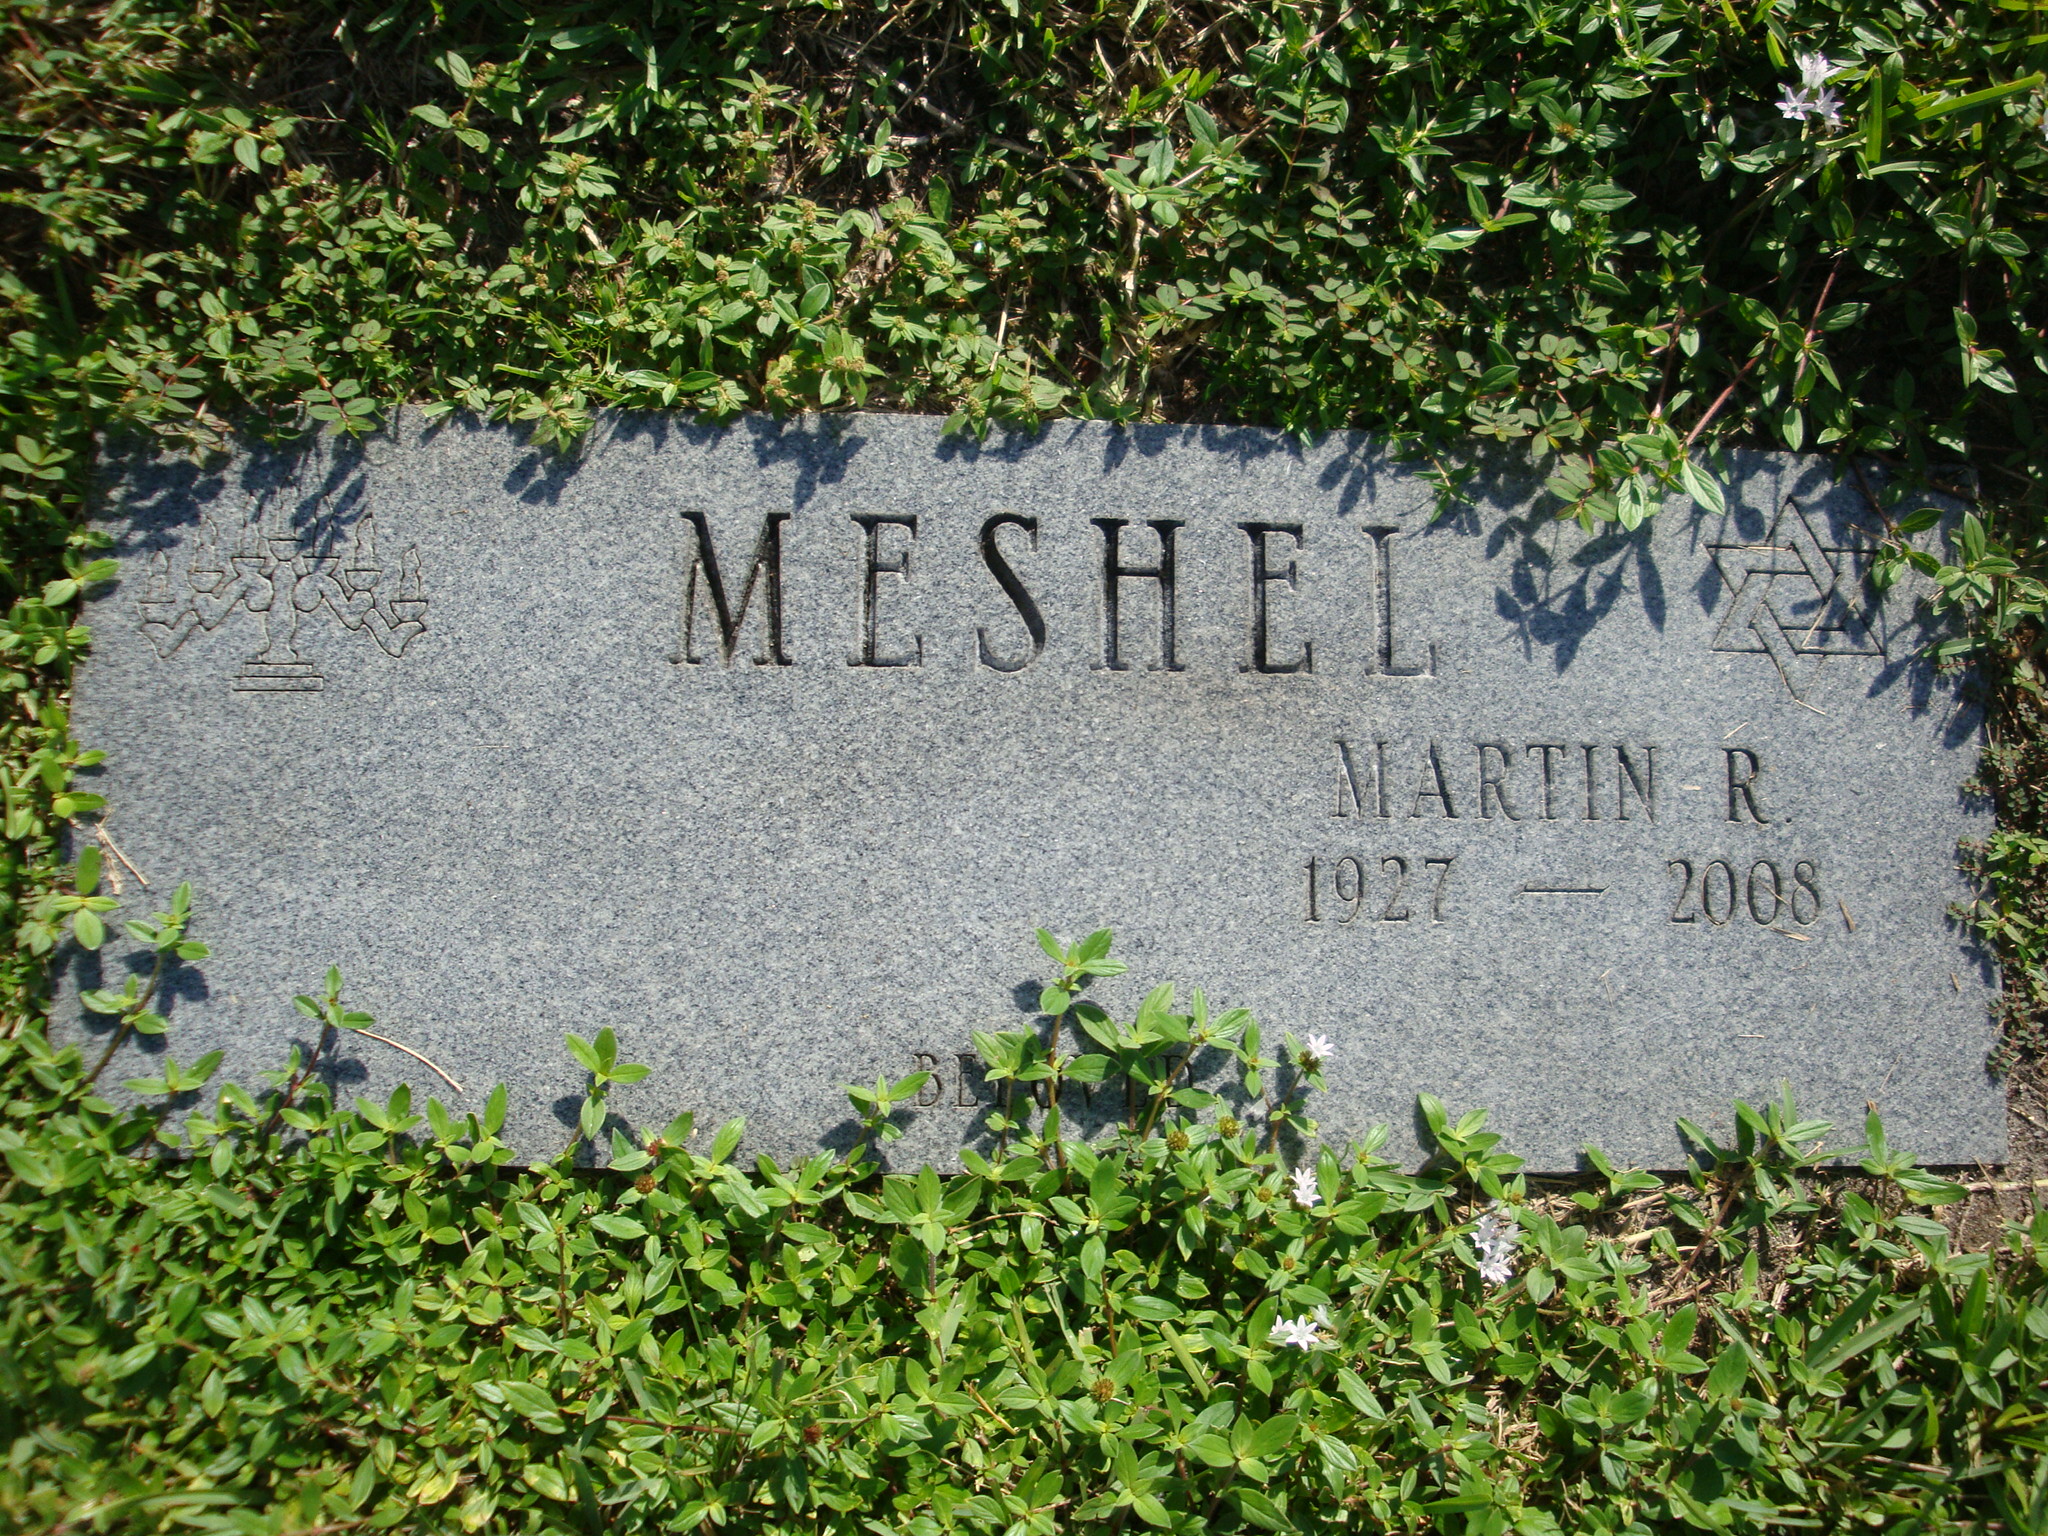 Martin R Meshel